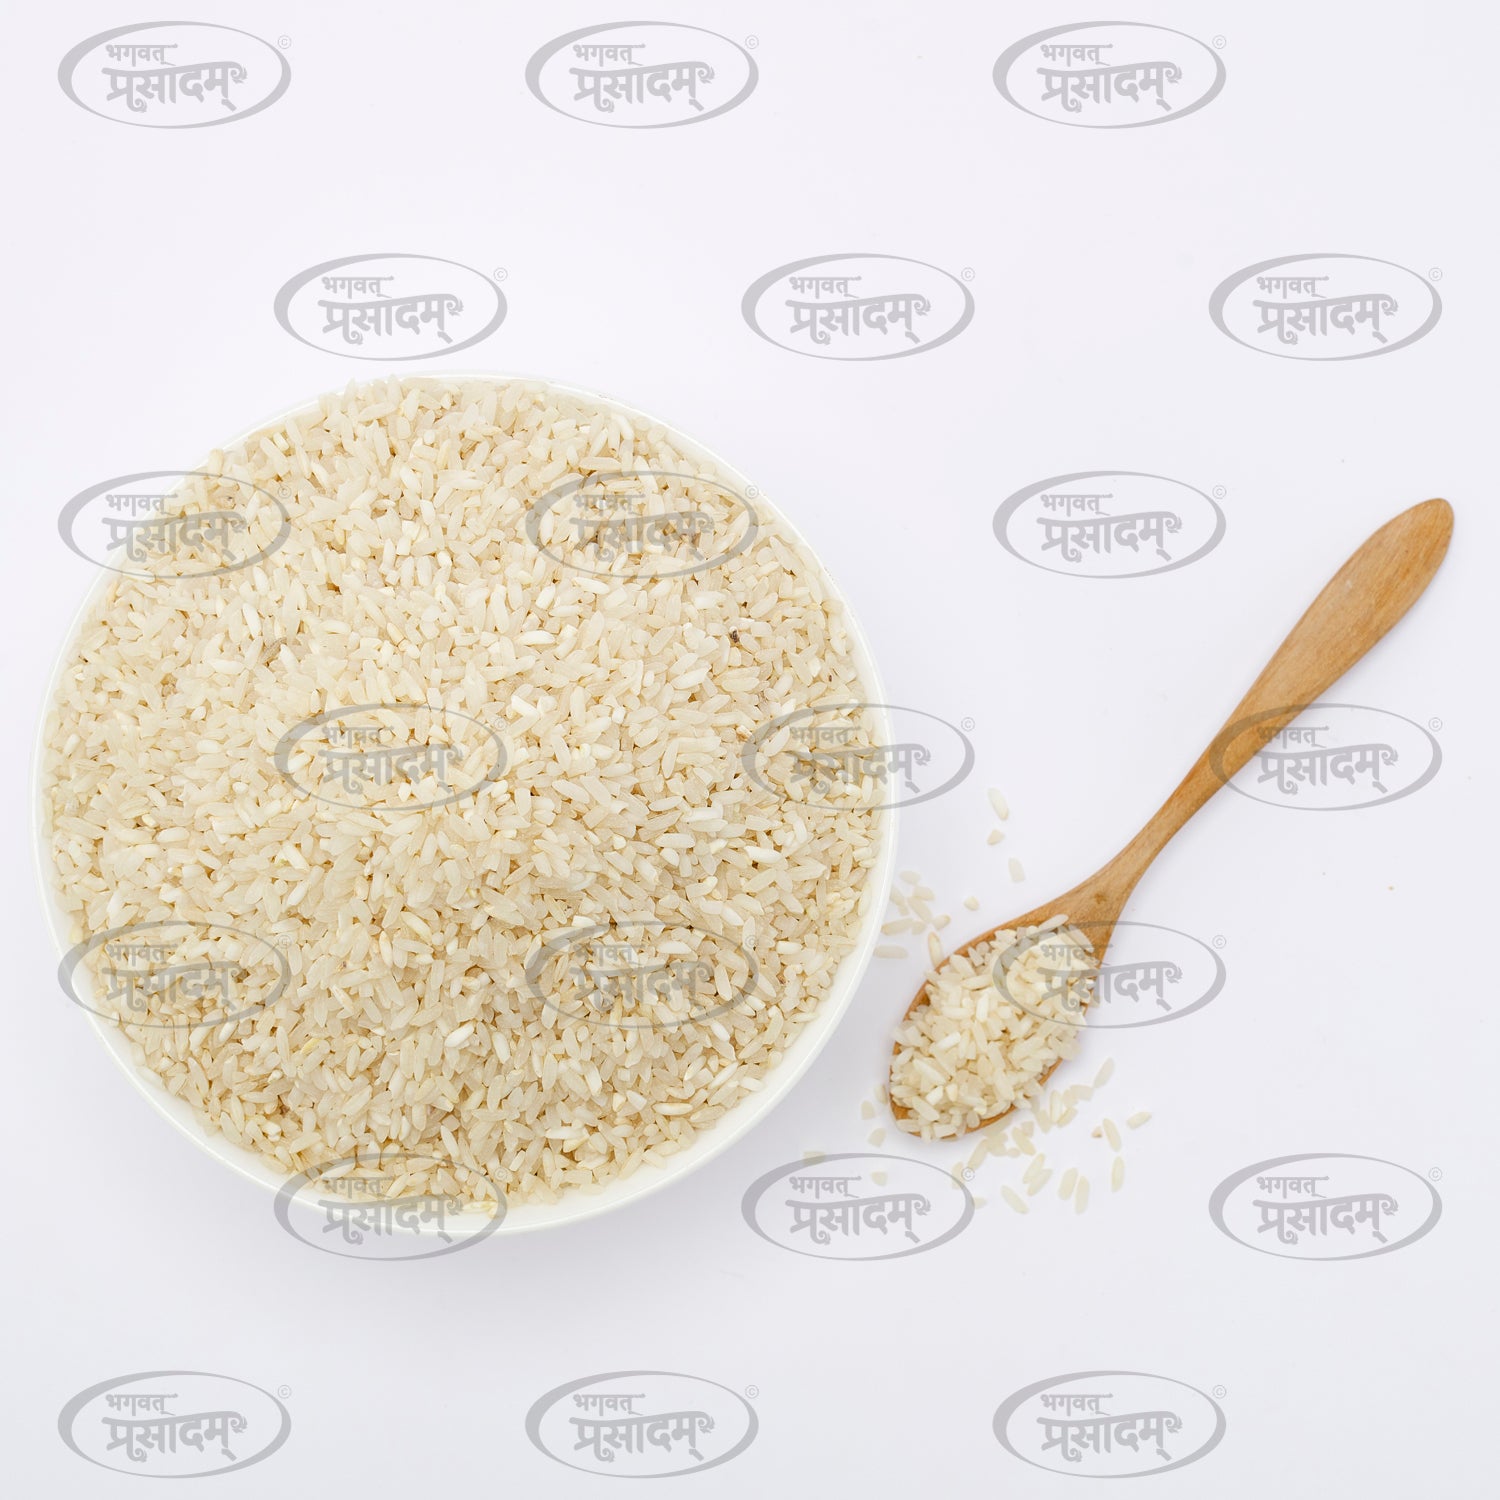 खिचड़ी चावल - भागवत प्रसादम द्वारा प्रीमियम गुणवत्ता वाला बासमती चावल मिश्रण